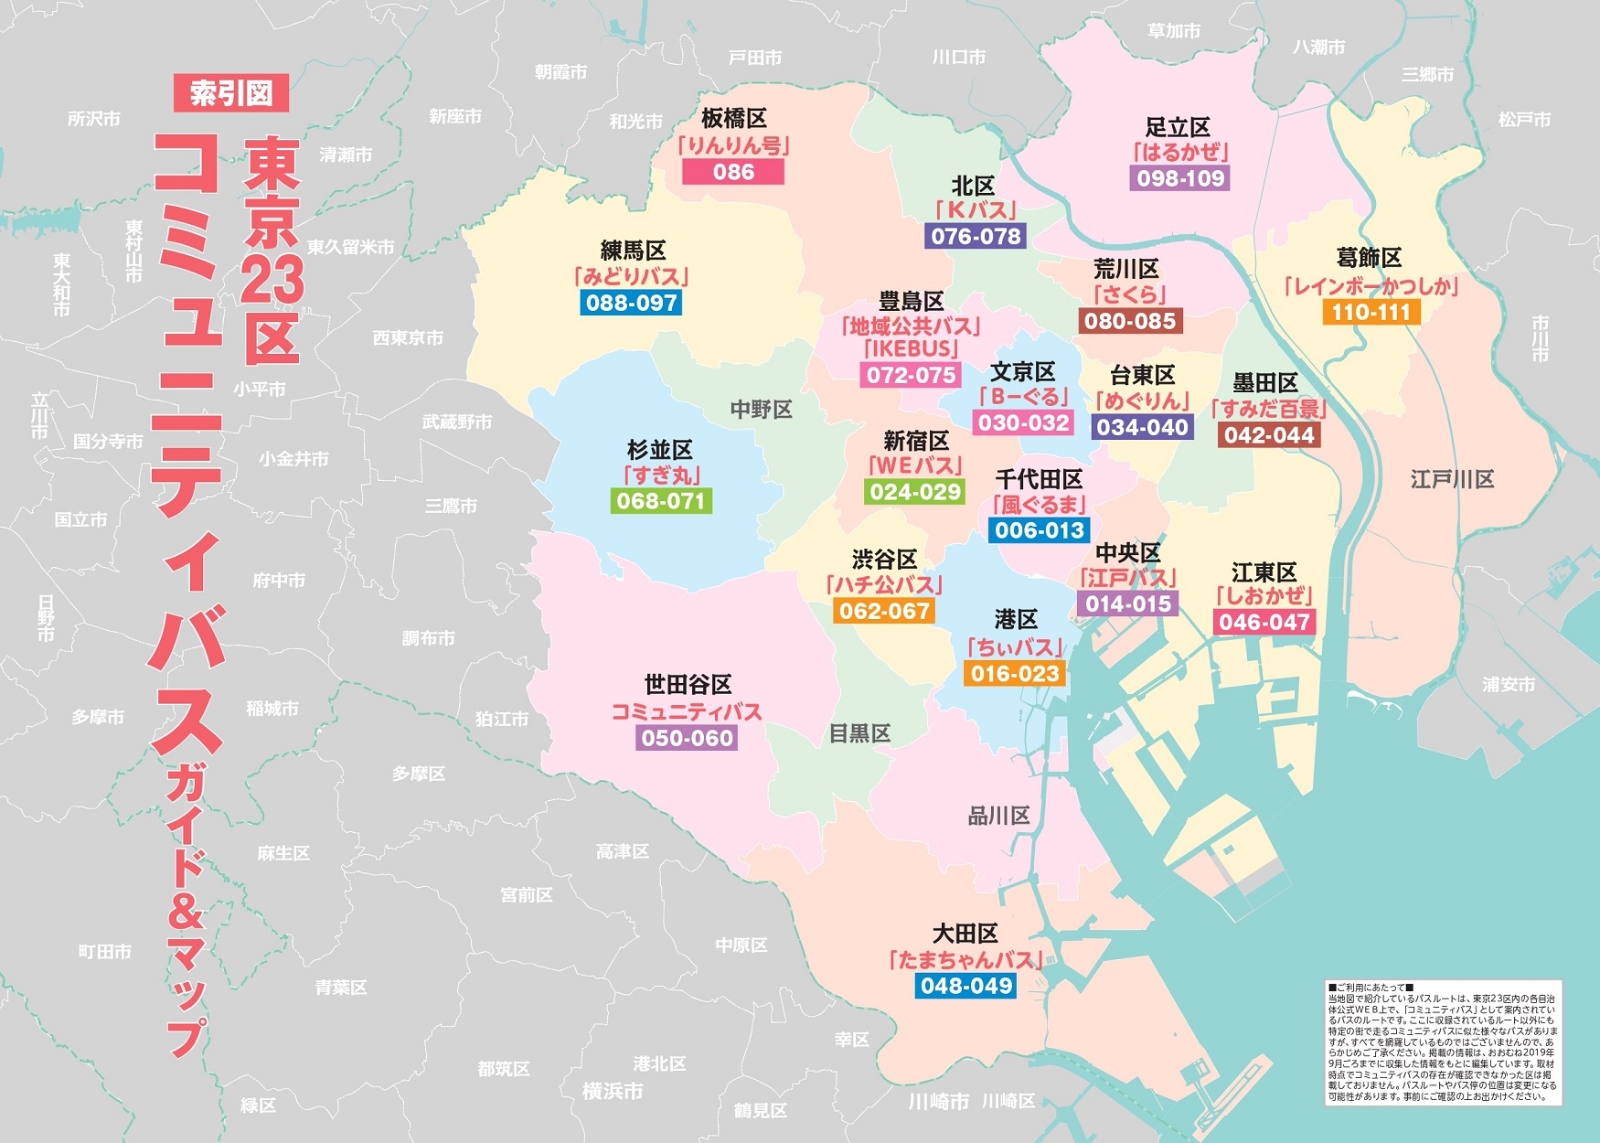 立派な 23 区 わかりやすい 23 区 Tokyo 地図 ベジュウェレン